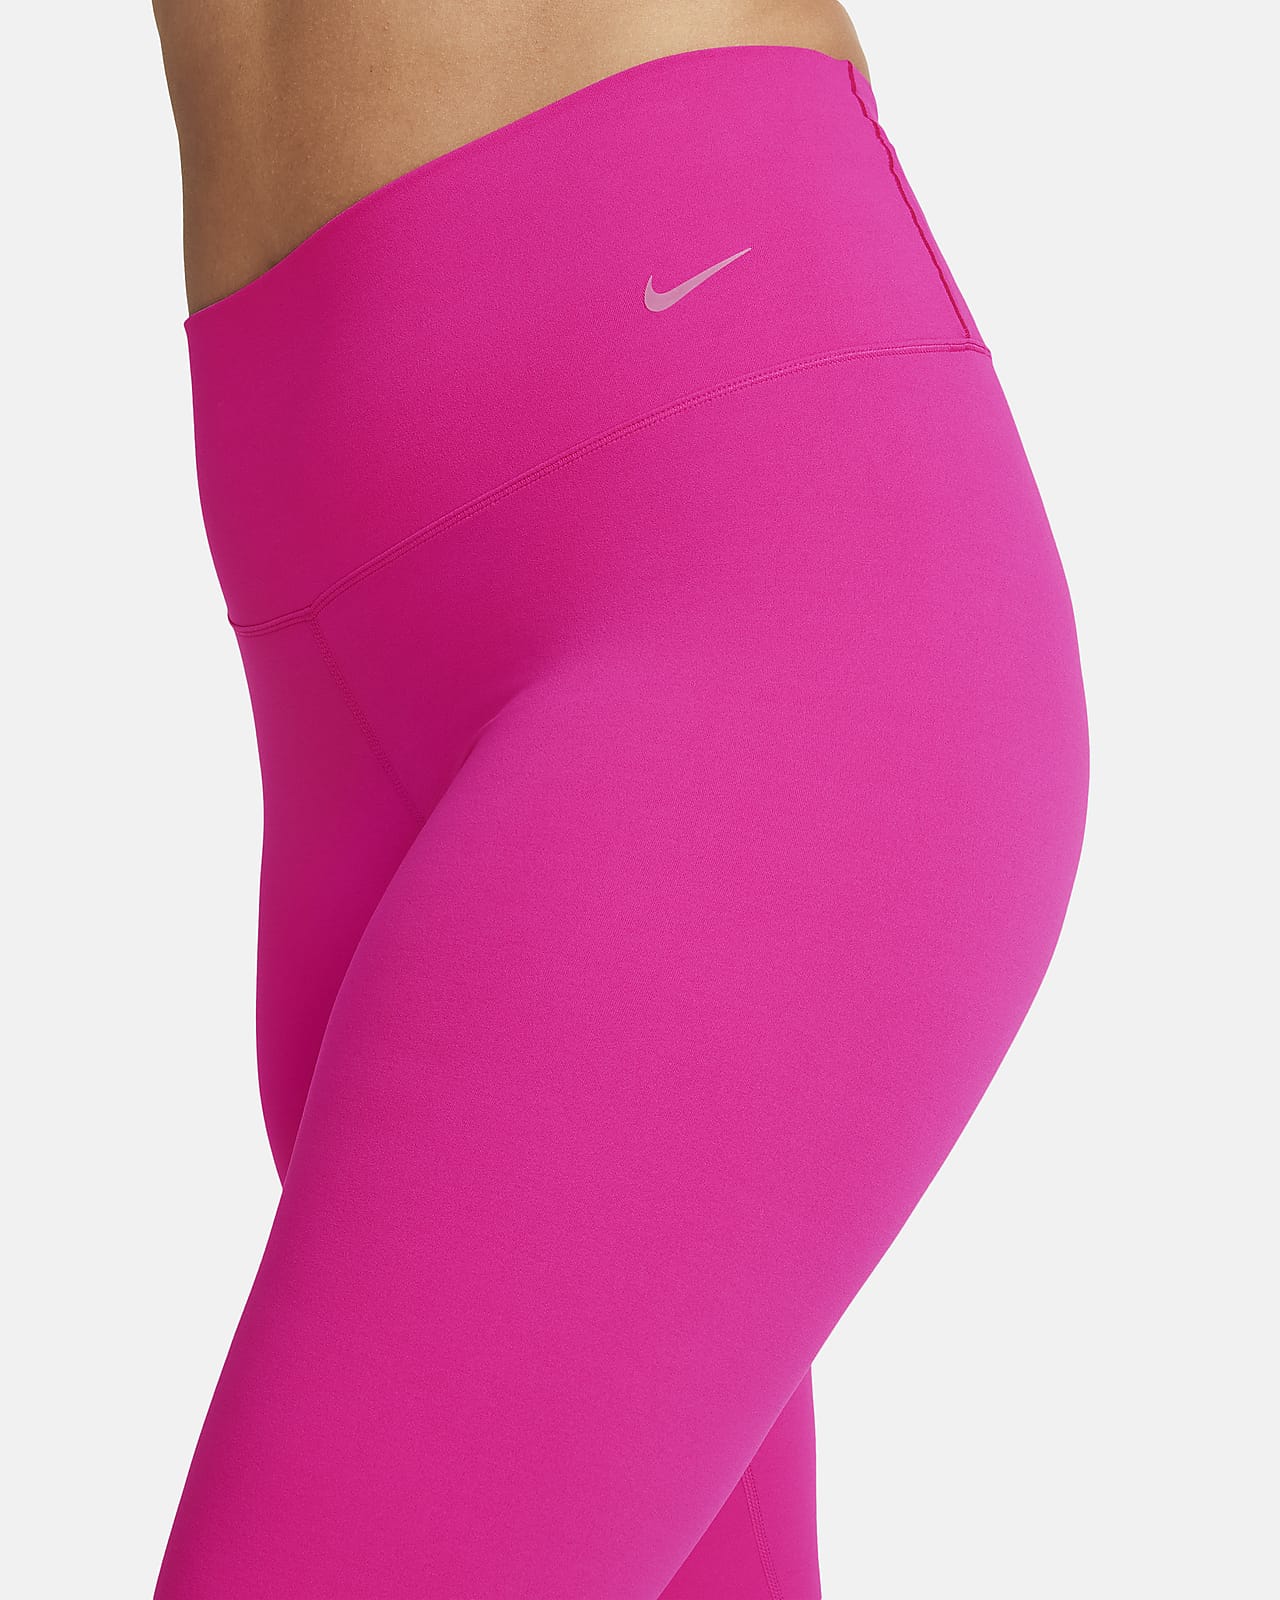 Pantalon léger taille standard 7/8ème rose femme